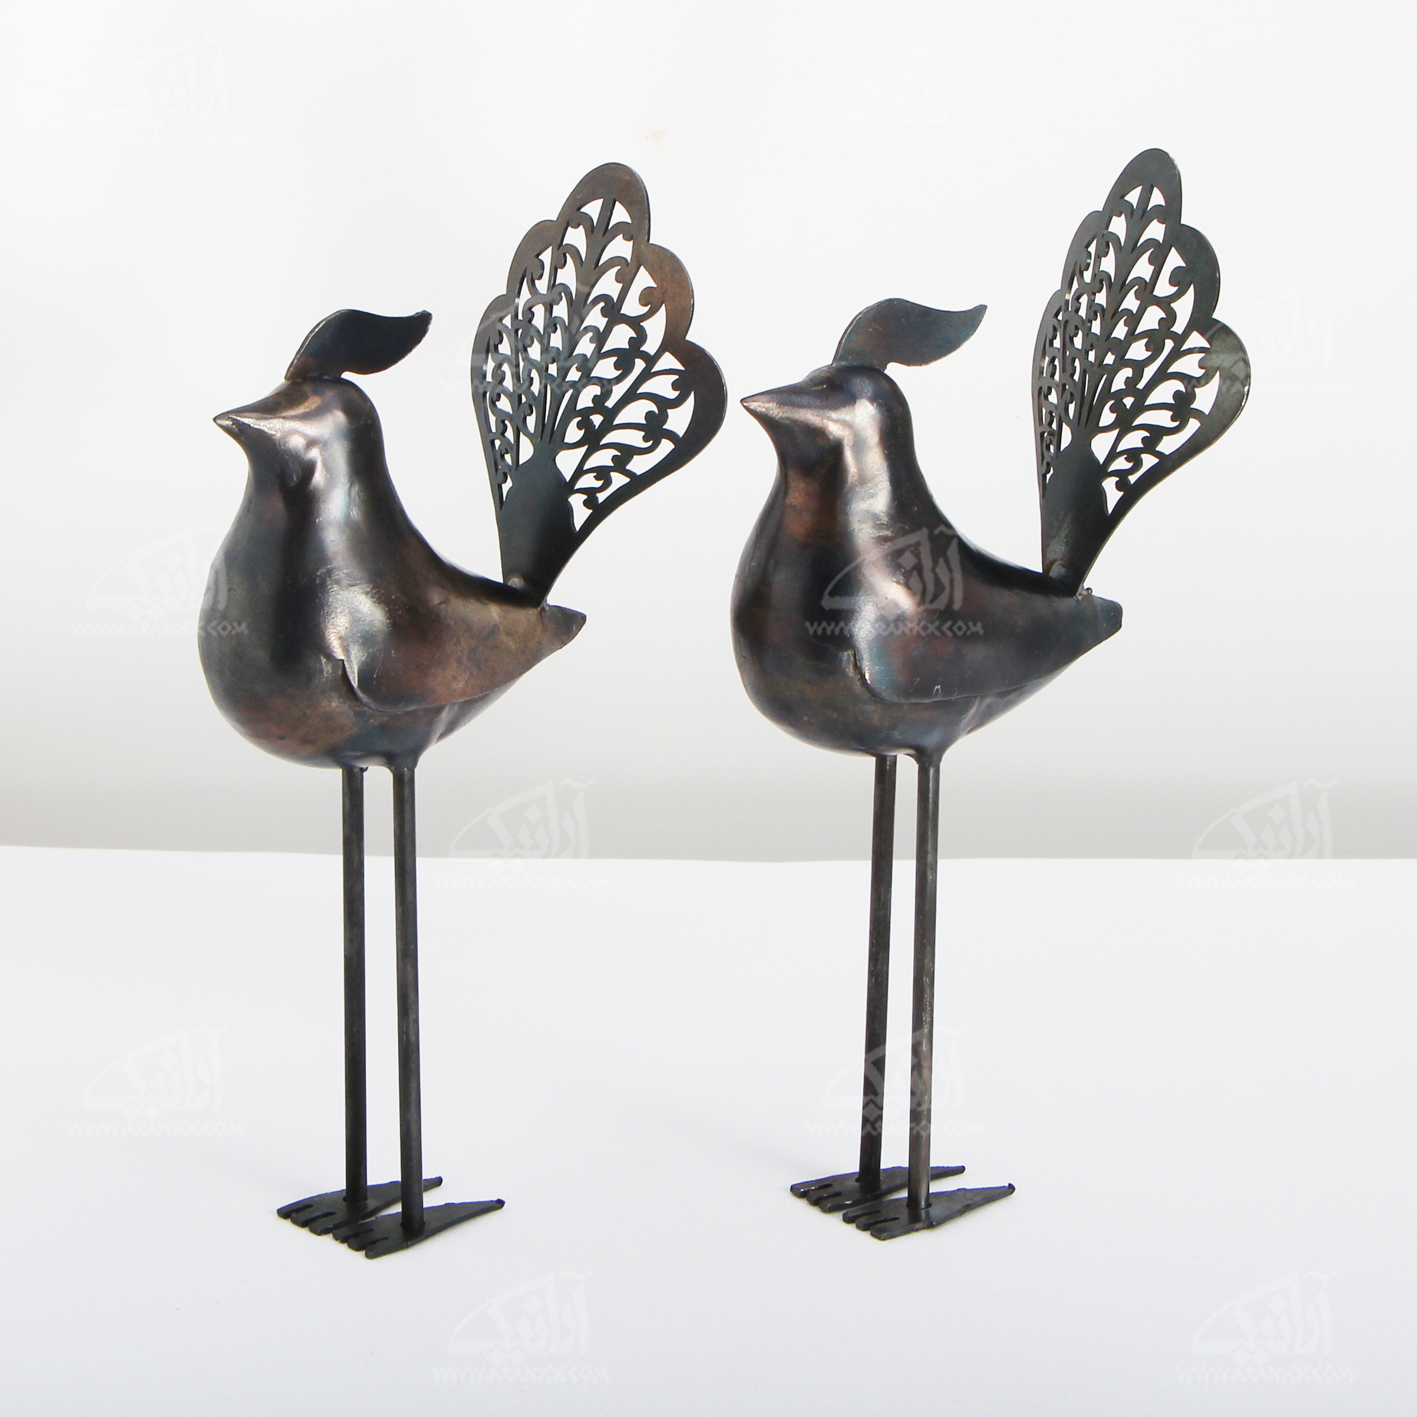 ‎مجسمه‎ پرنده‎ ‎فولادی‎‎ ‎‎مشبک‎ ‎‎ رنگ ‎خاکستری‎ ‎ ‎ ‎ ‎‎‎‎مدل 1105700016